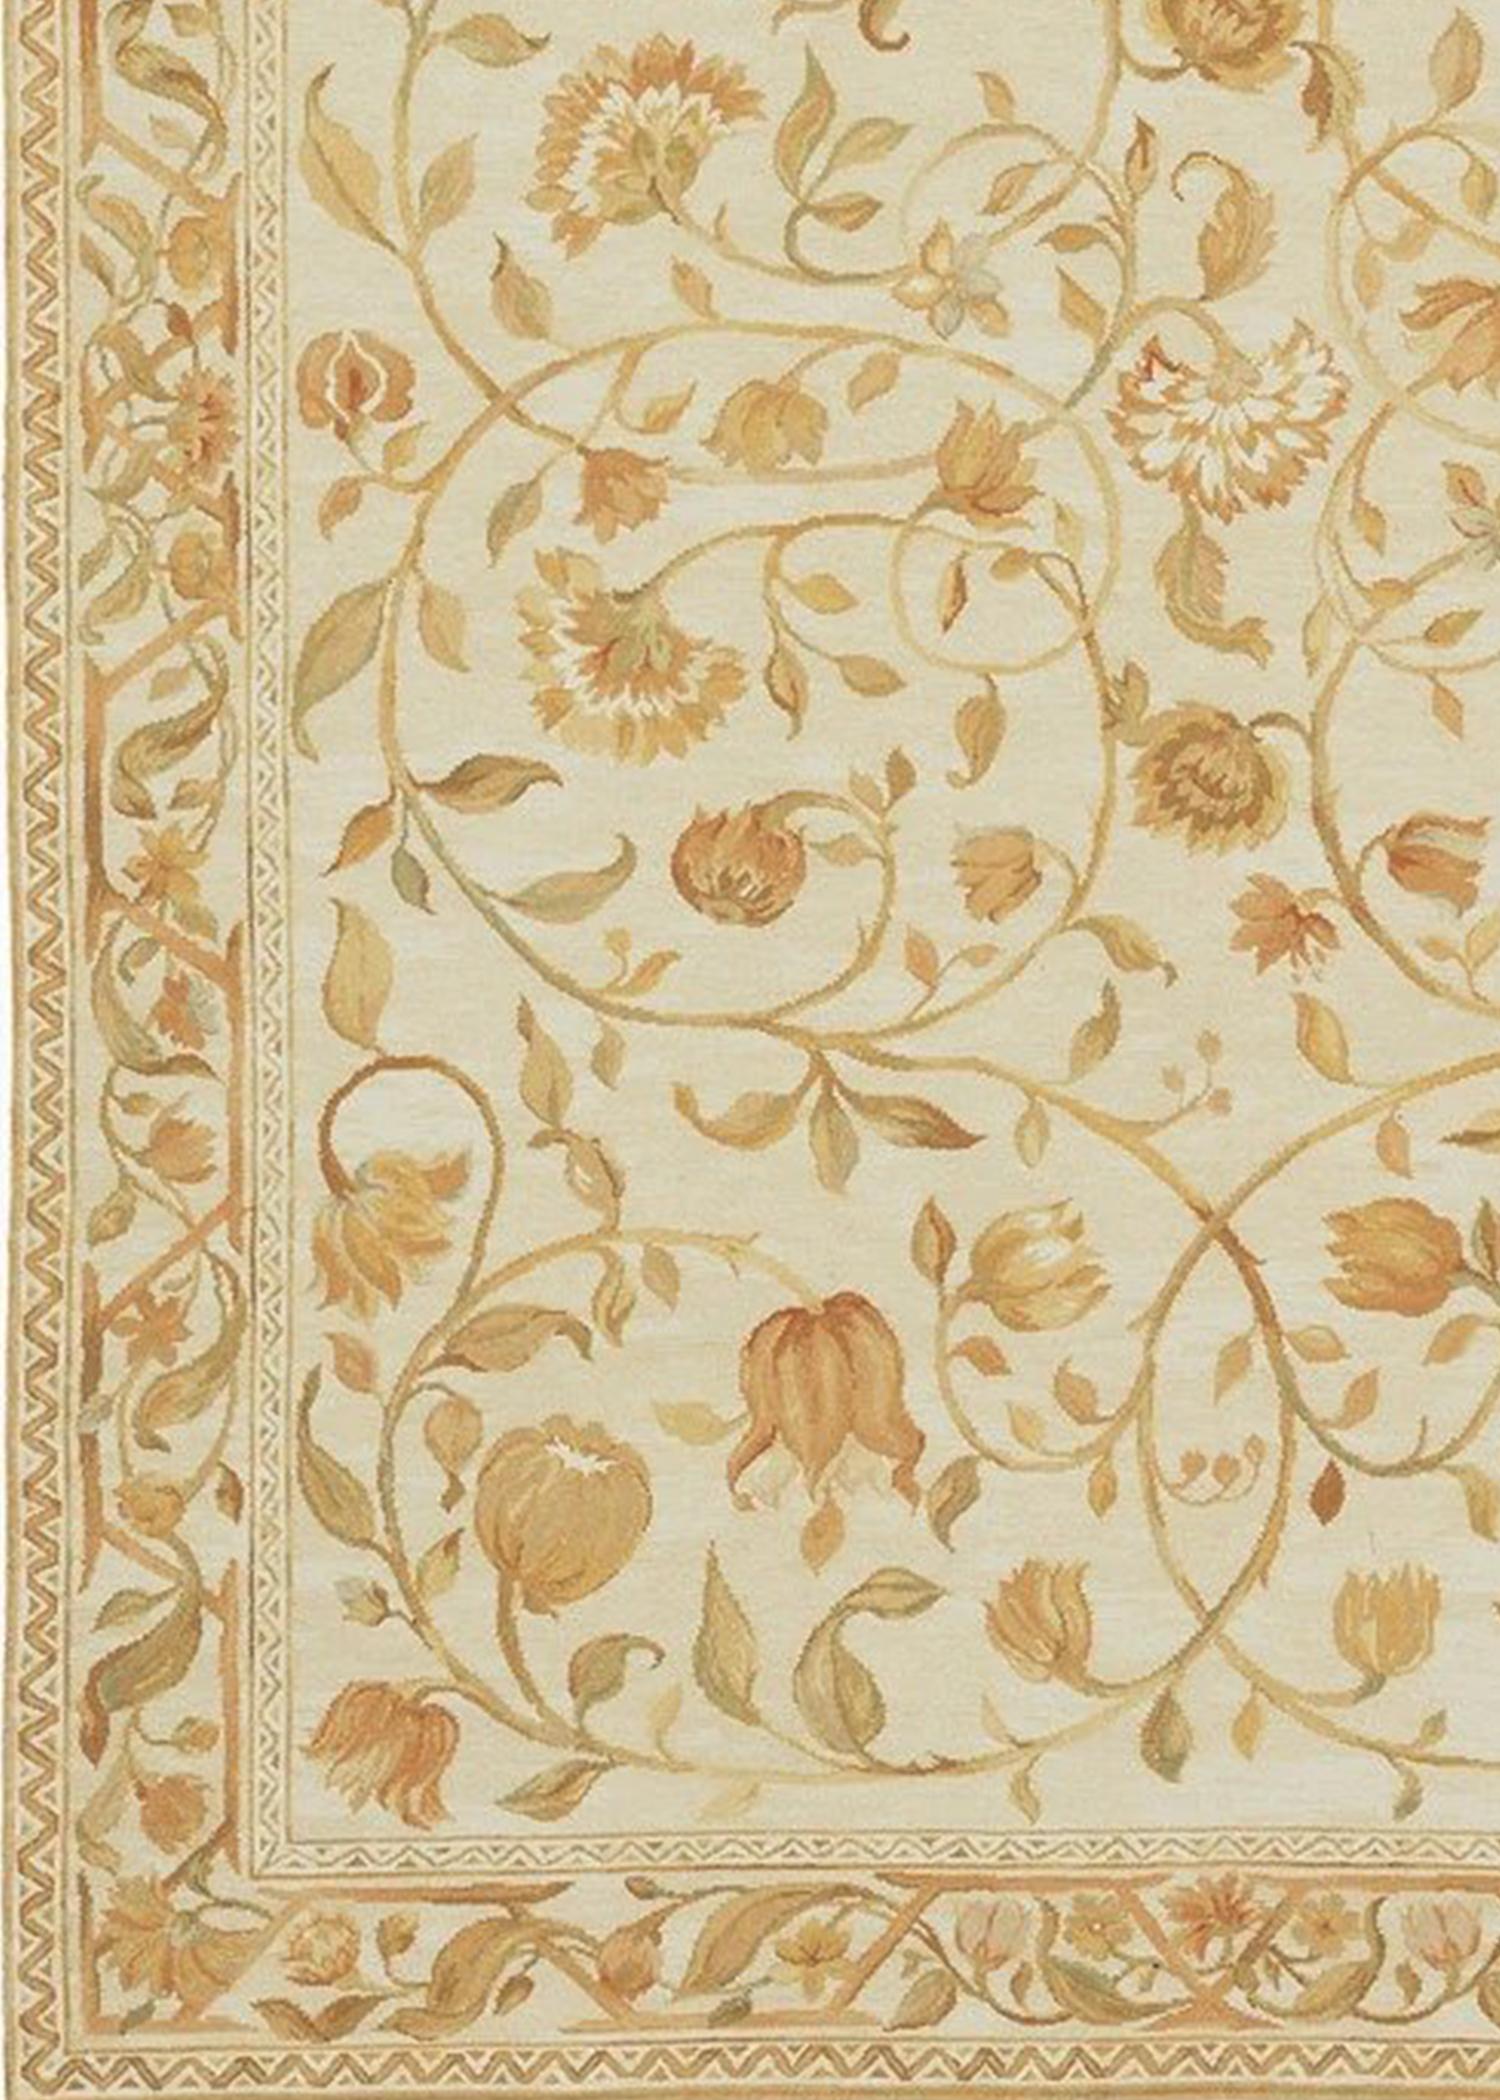 D'après une peinture originale d'Asmara inspirée d'une colline toscane couverte d'oliviers, de cyprès, de fleurs sauvages et de buissons de verge d'or. Ce tapis à poils coupés et bouclés a été fabriqué à la main en combinant un tissage bouclé